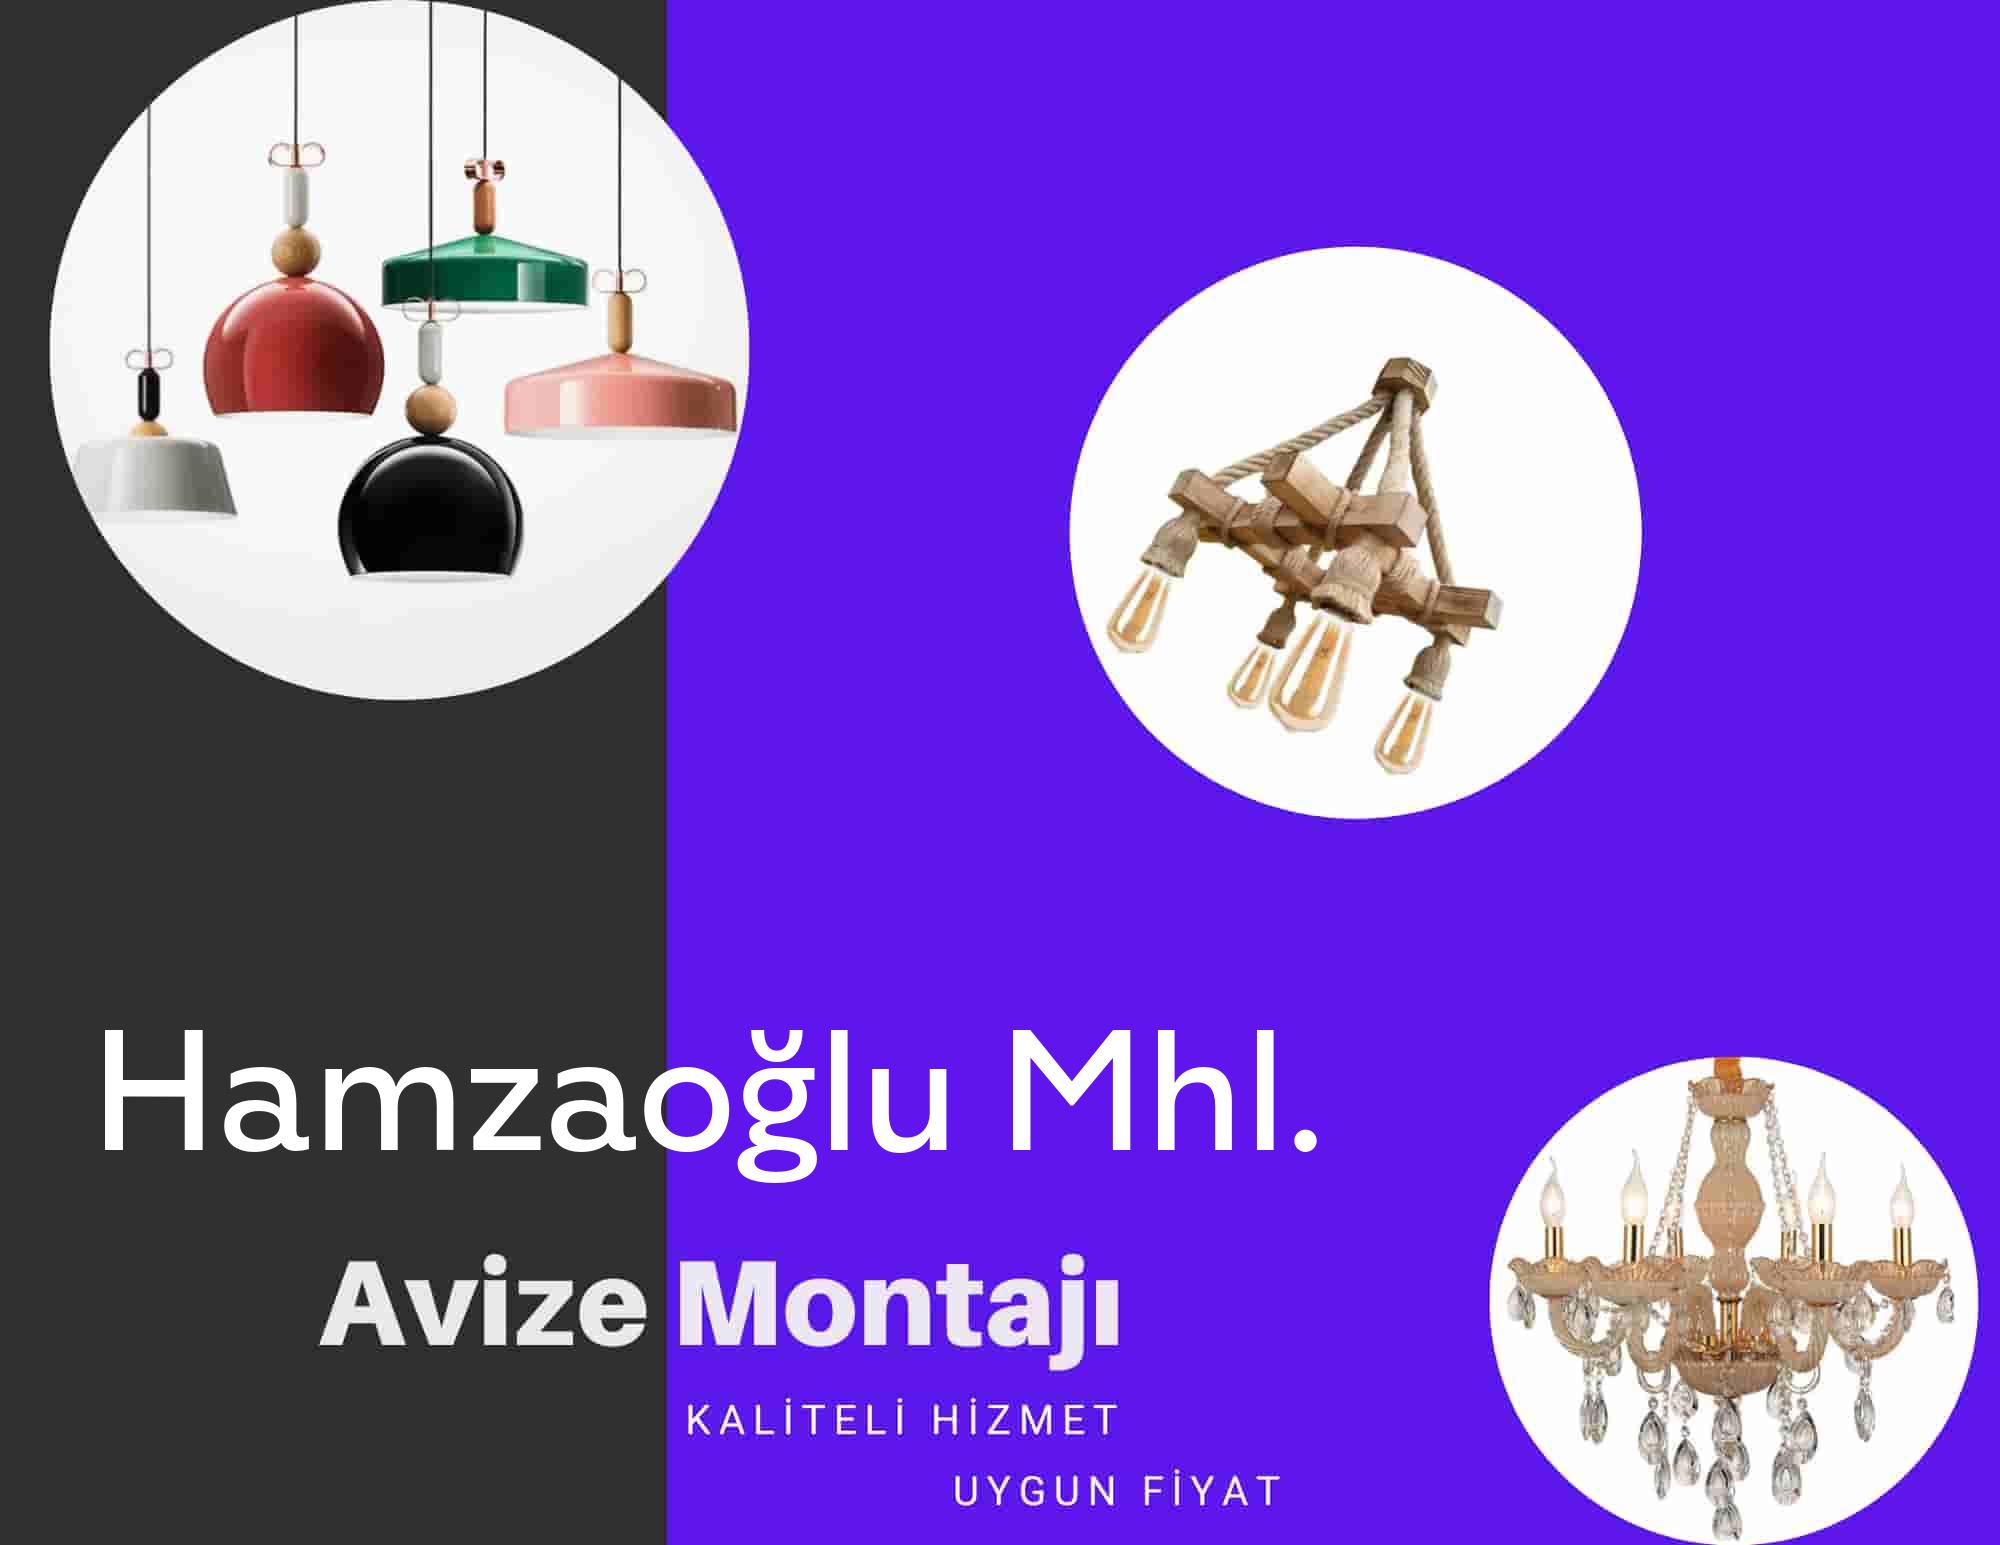 Hamzaoğlu Mhl.de avize montajı yapan yerler arıyorsanız elektrikcicagir anında size profesyonel avize montajı ustasını yönlendirir.